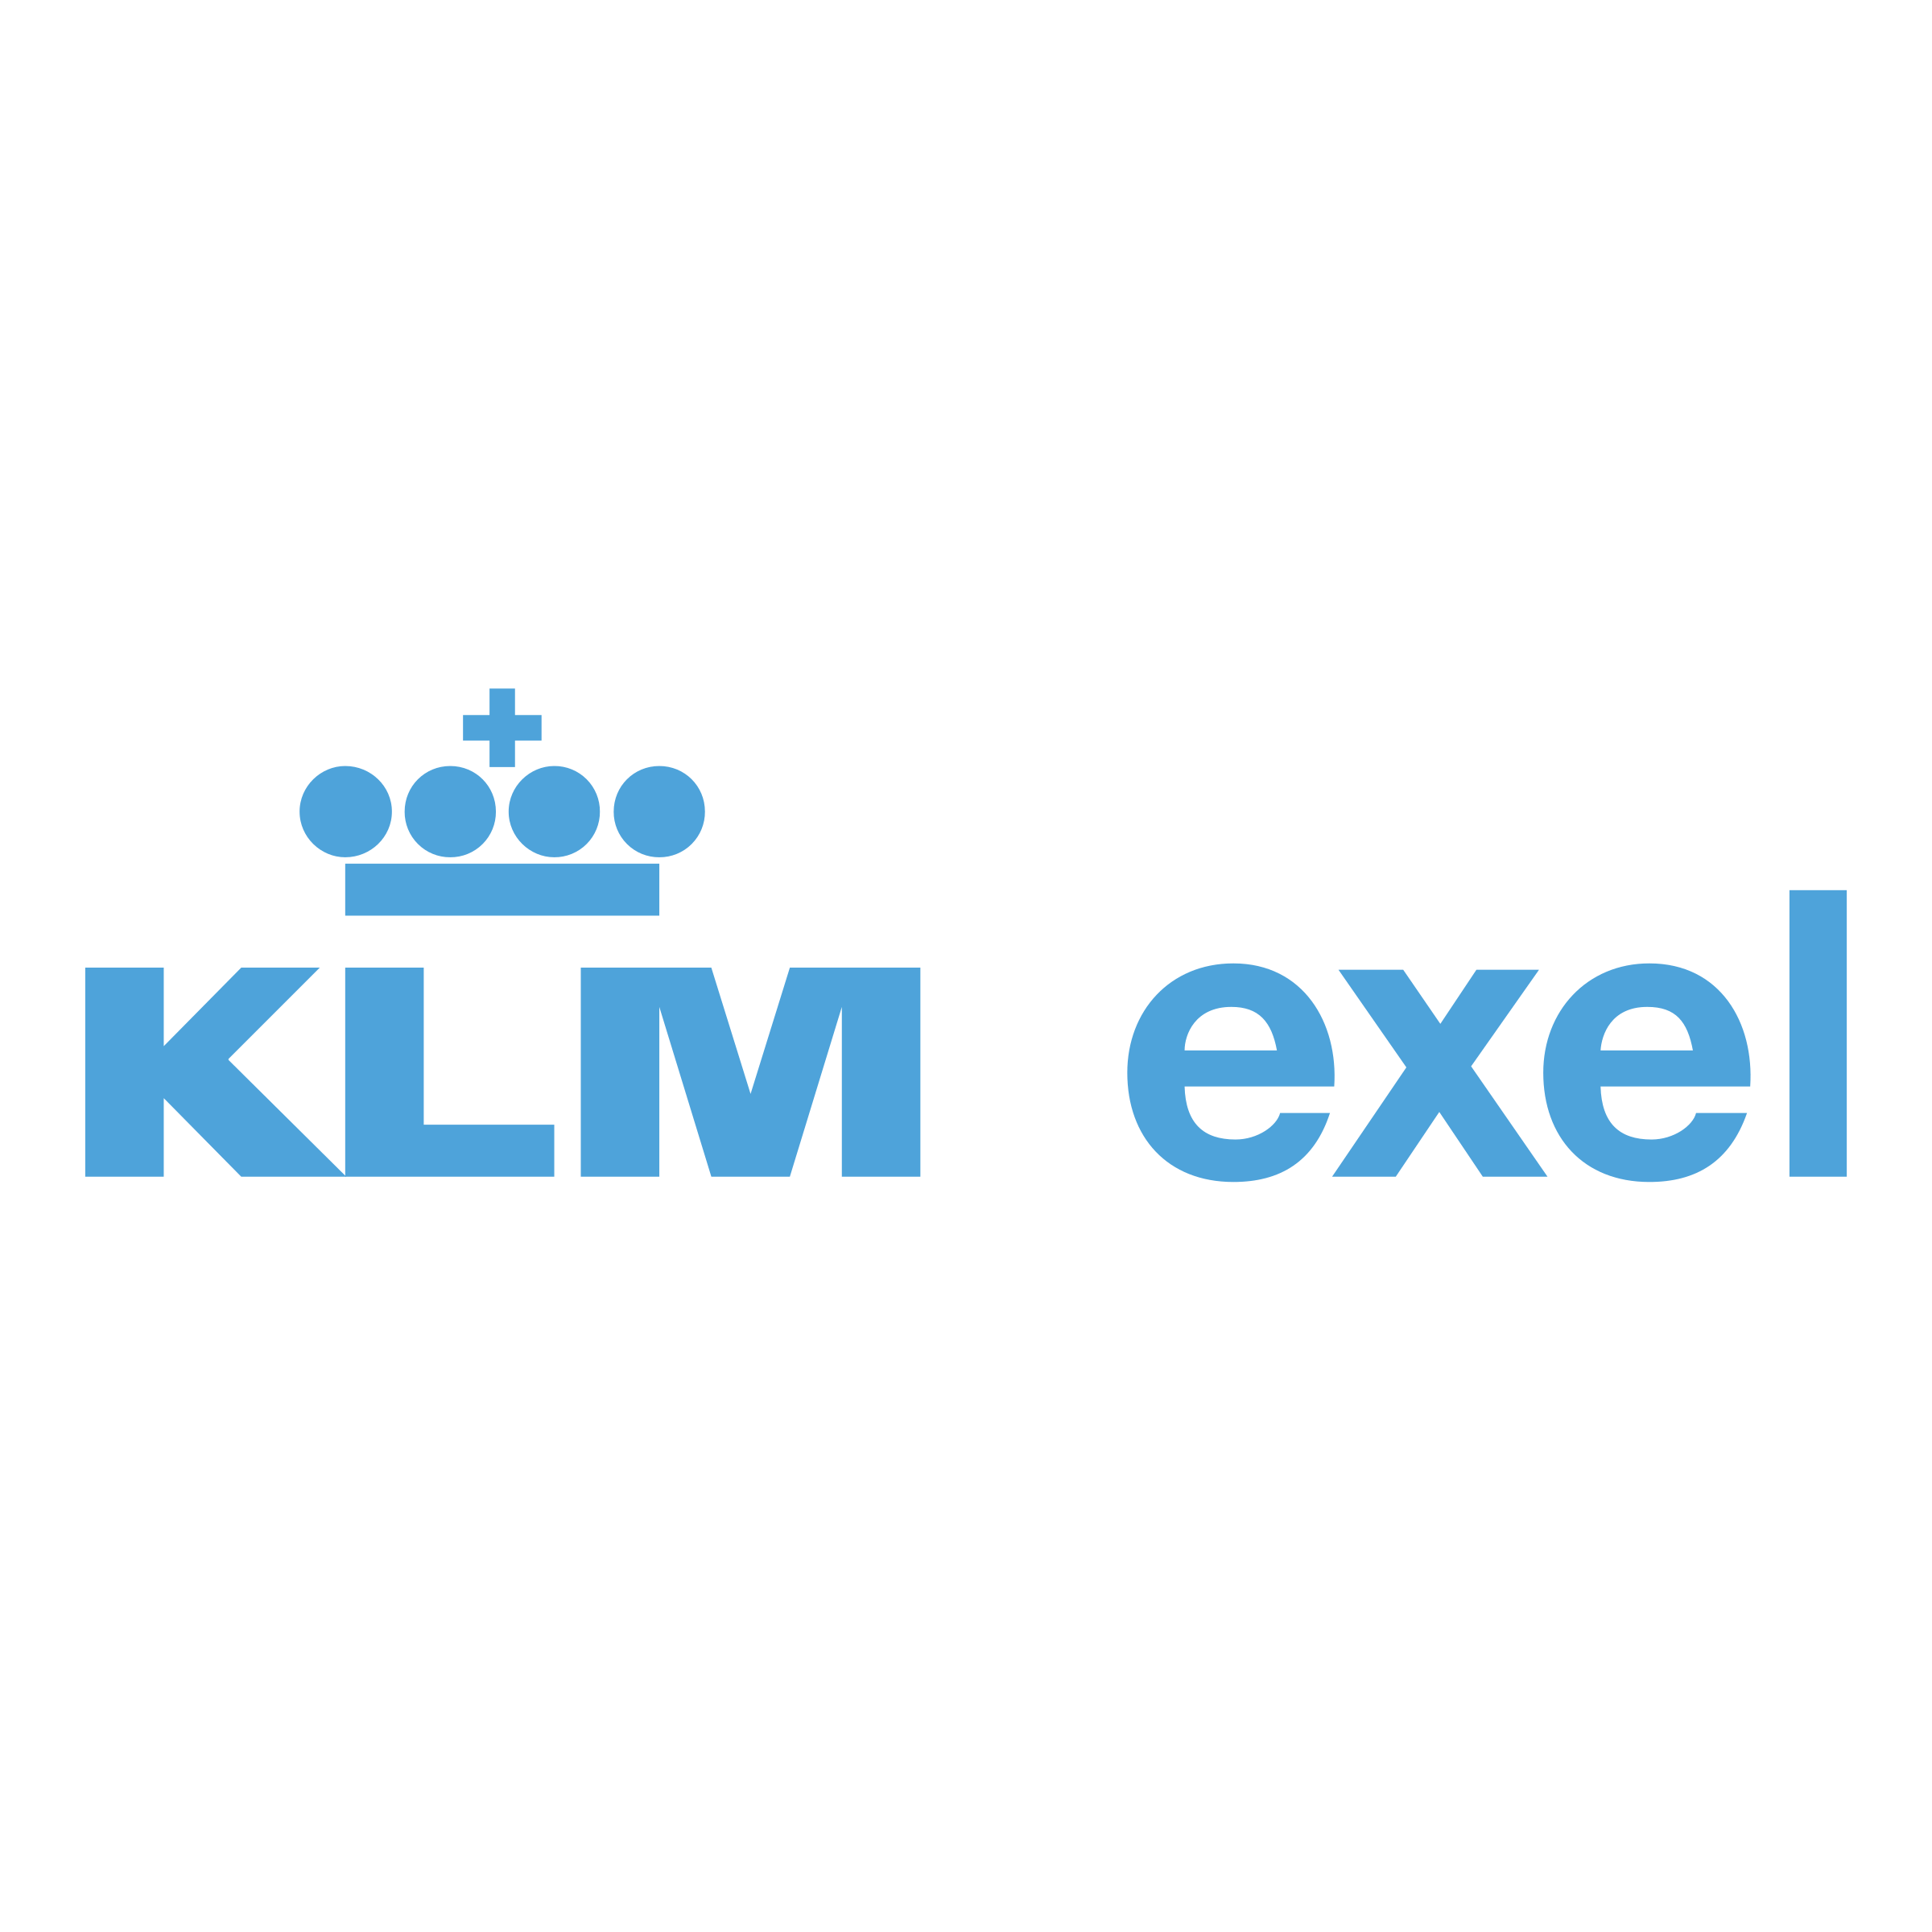 Exel Logo - KLM Exel Logo PNG Transparent & SVG Vector - Freebie Supply